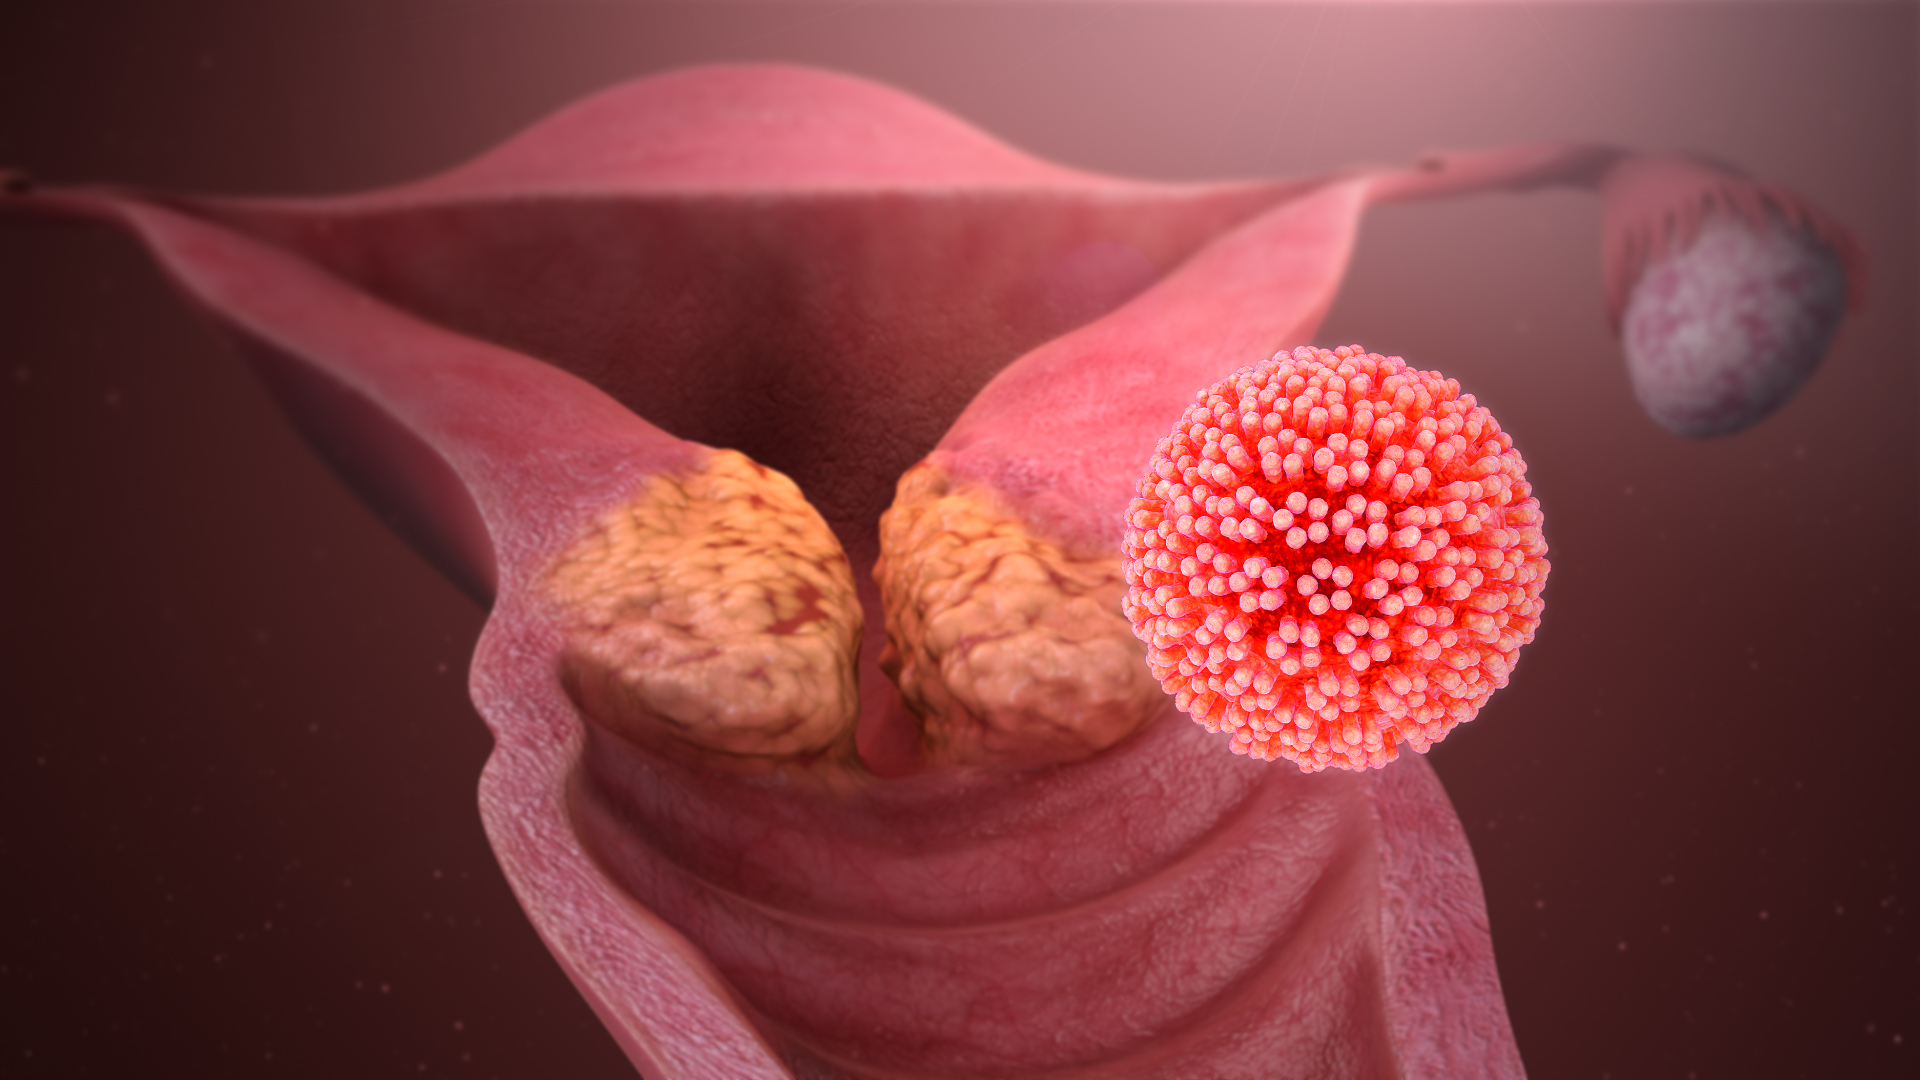 3D Medical Animation still shot showing Cervical Cancer